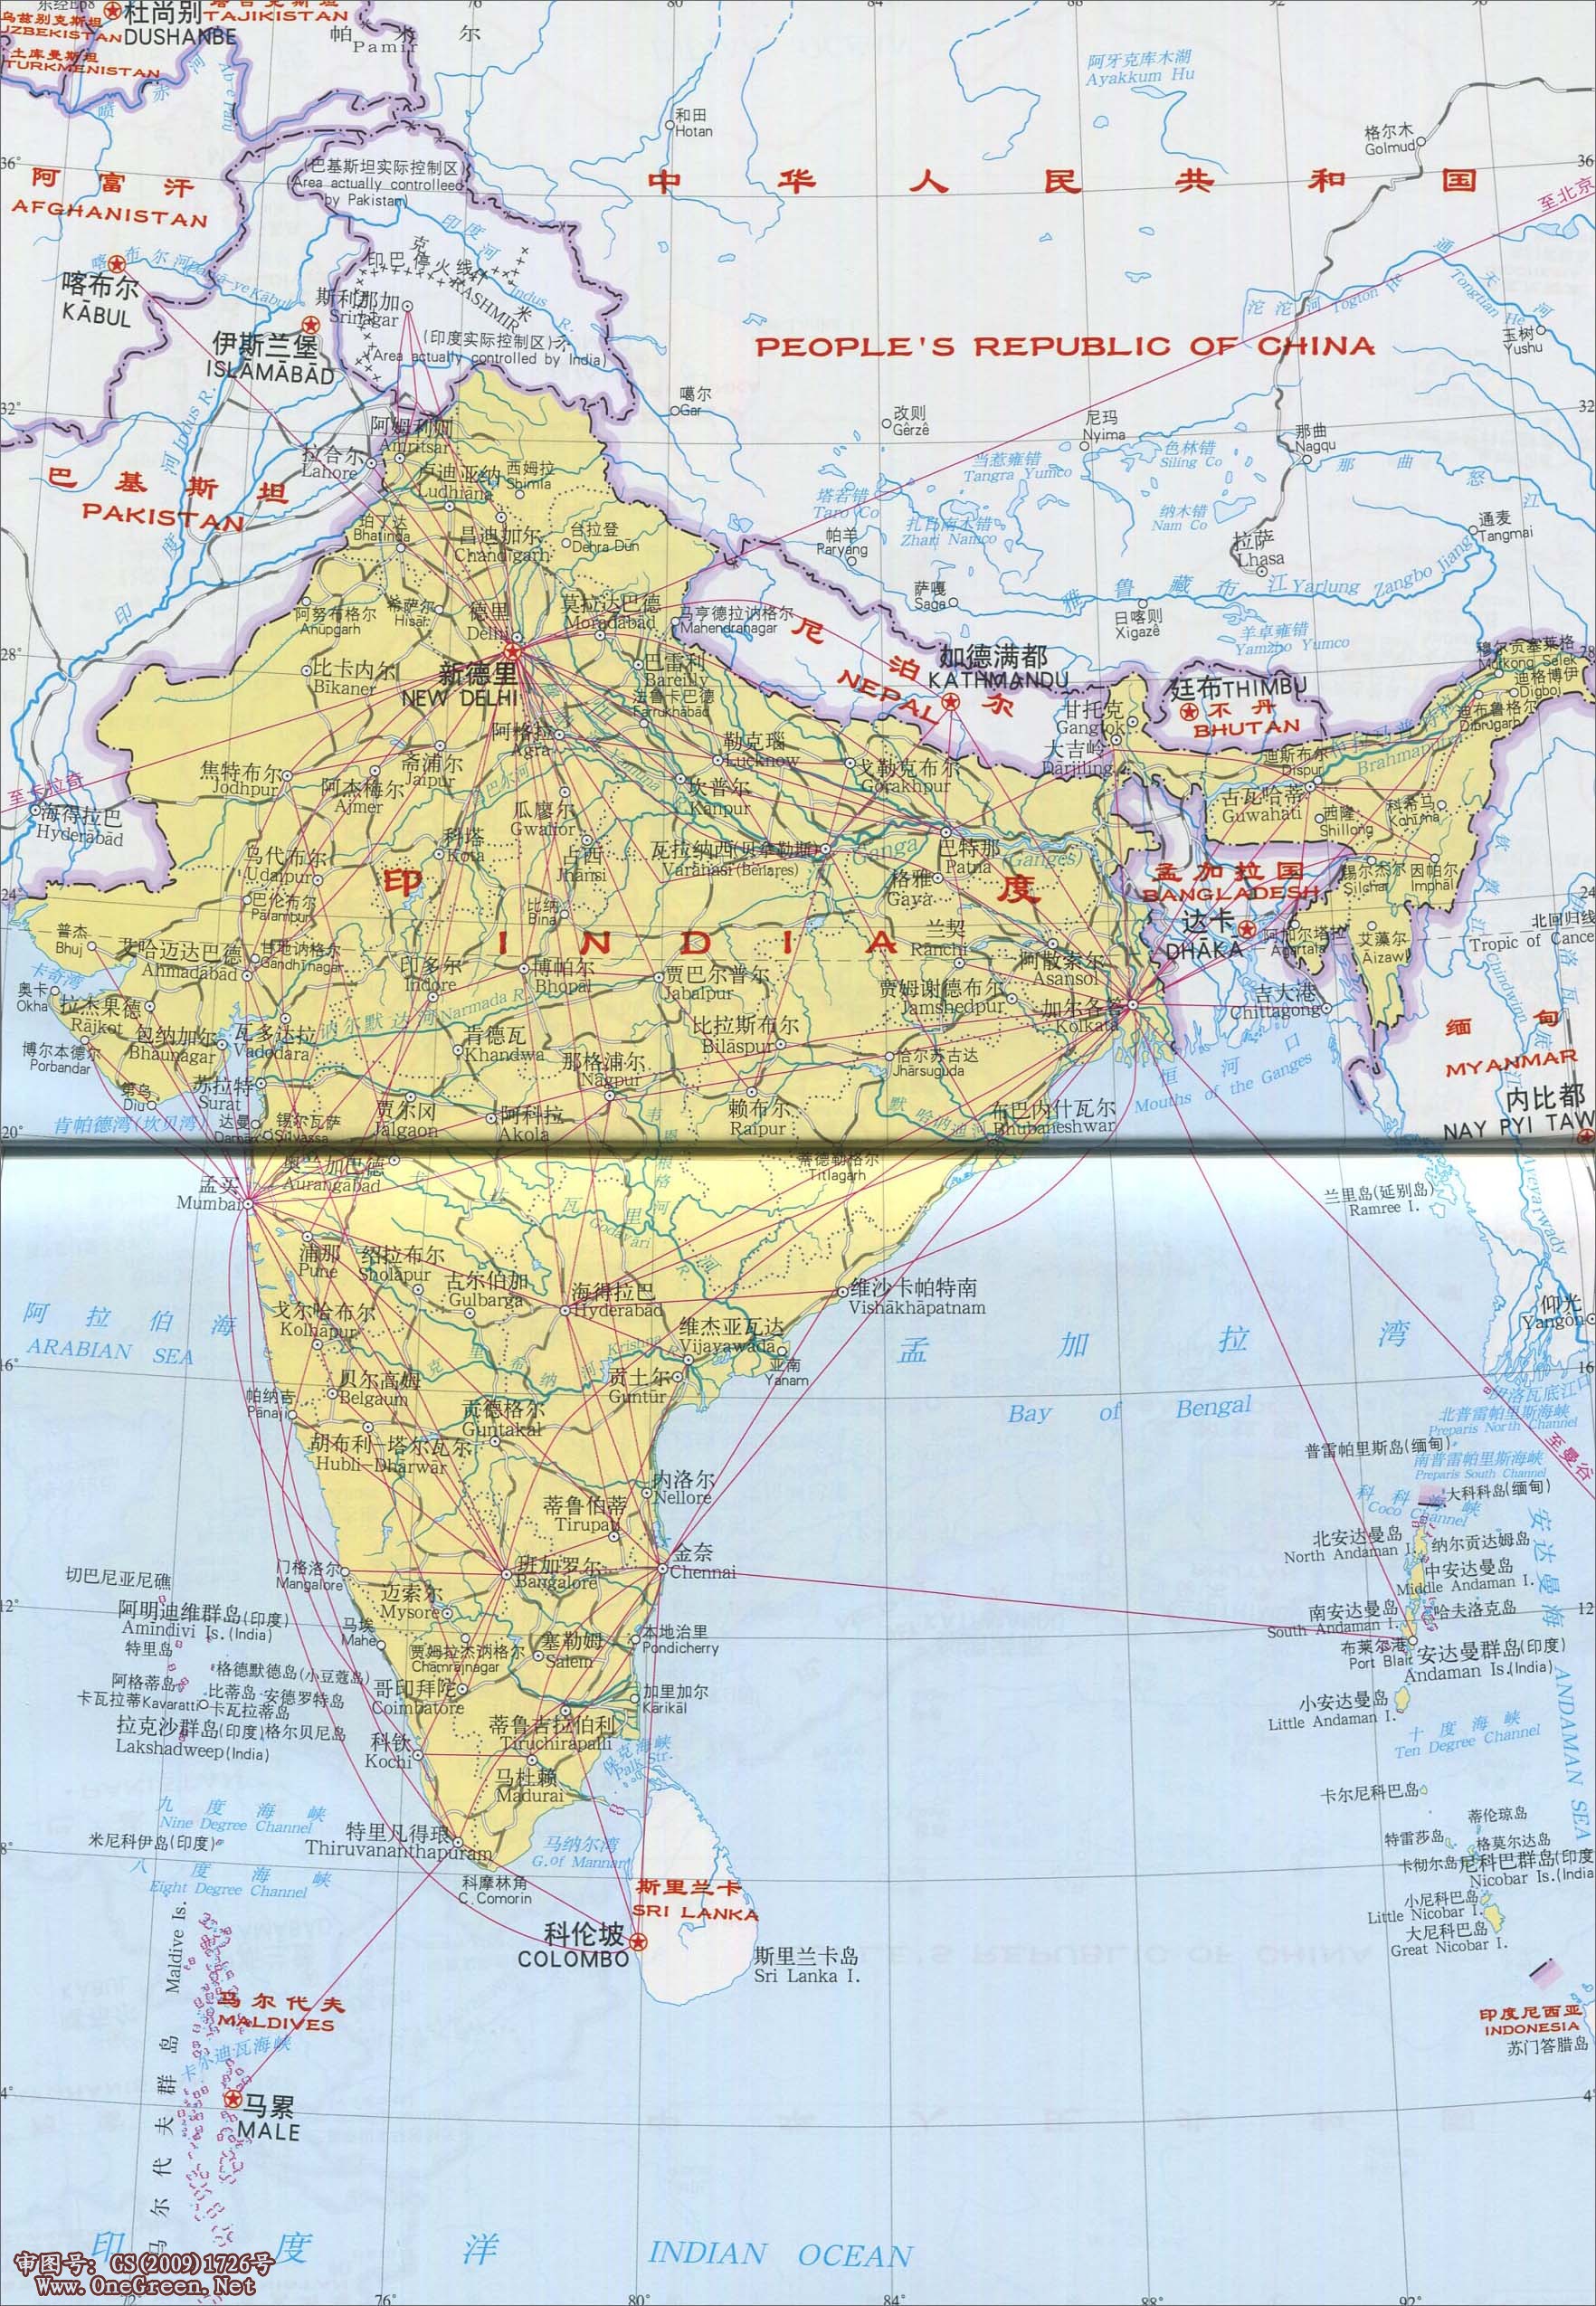 印度交通-铁路和航空线路图地图